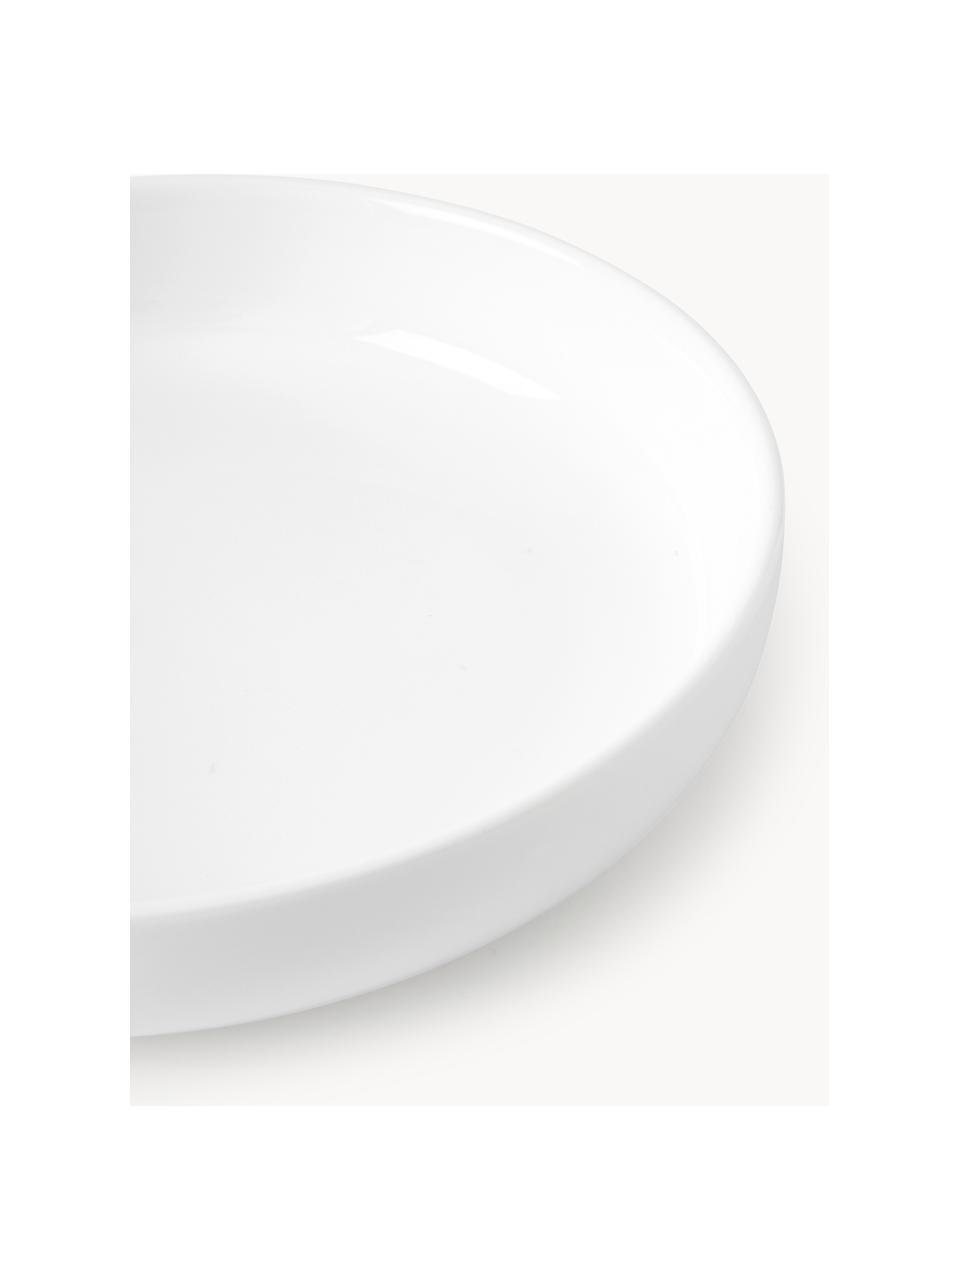 Piatti fondi in porcellana Nessa 4 pz, Porcellana a pasta dura di alta qualità, Bianco latte lucido, Ø 21 cm